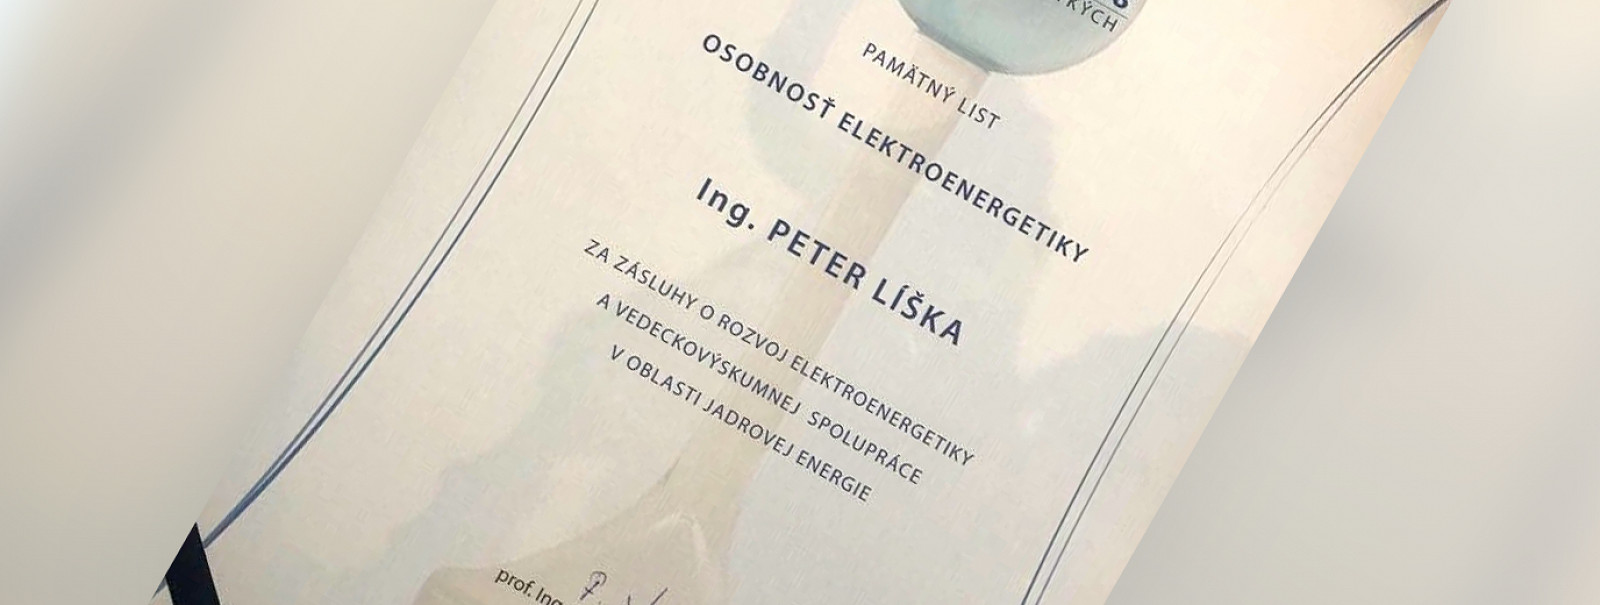 Osobnosťou elektroenergetiky 2018 je Peter Líška